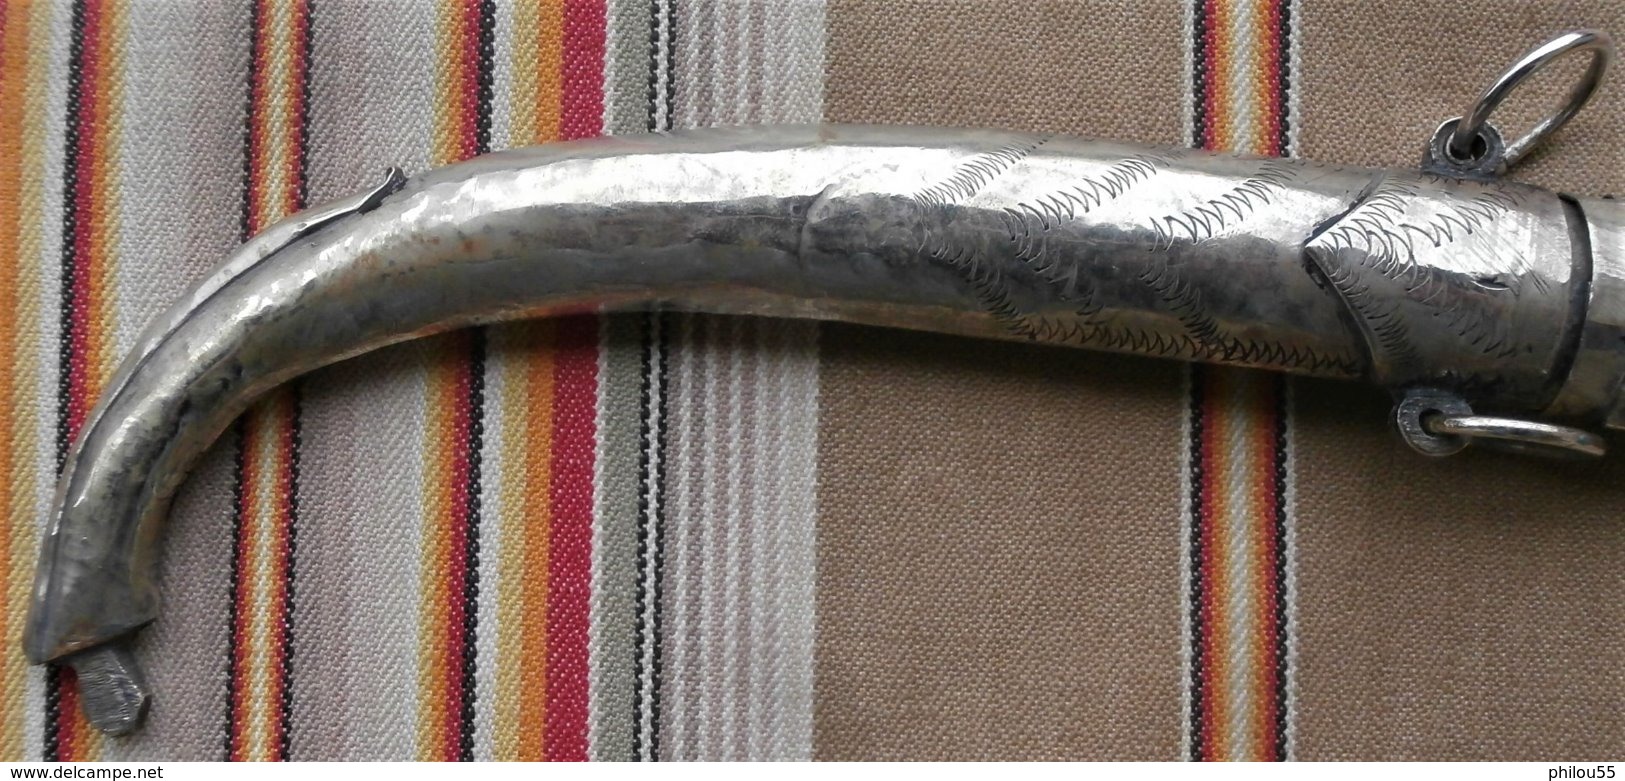 Lot de 2 Anciens Couteaux AFRIQUE DU NORD Metal Argenté Laiton couteaux et  lames gravees